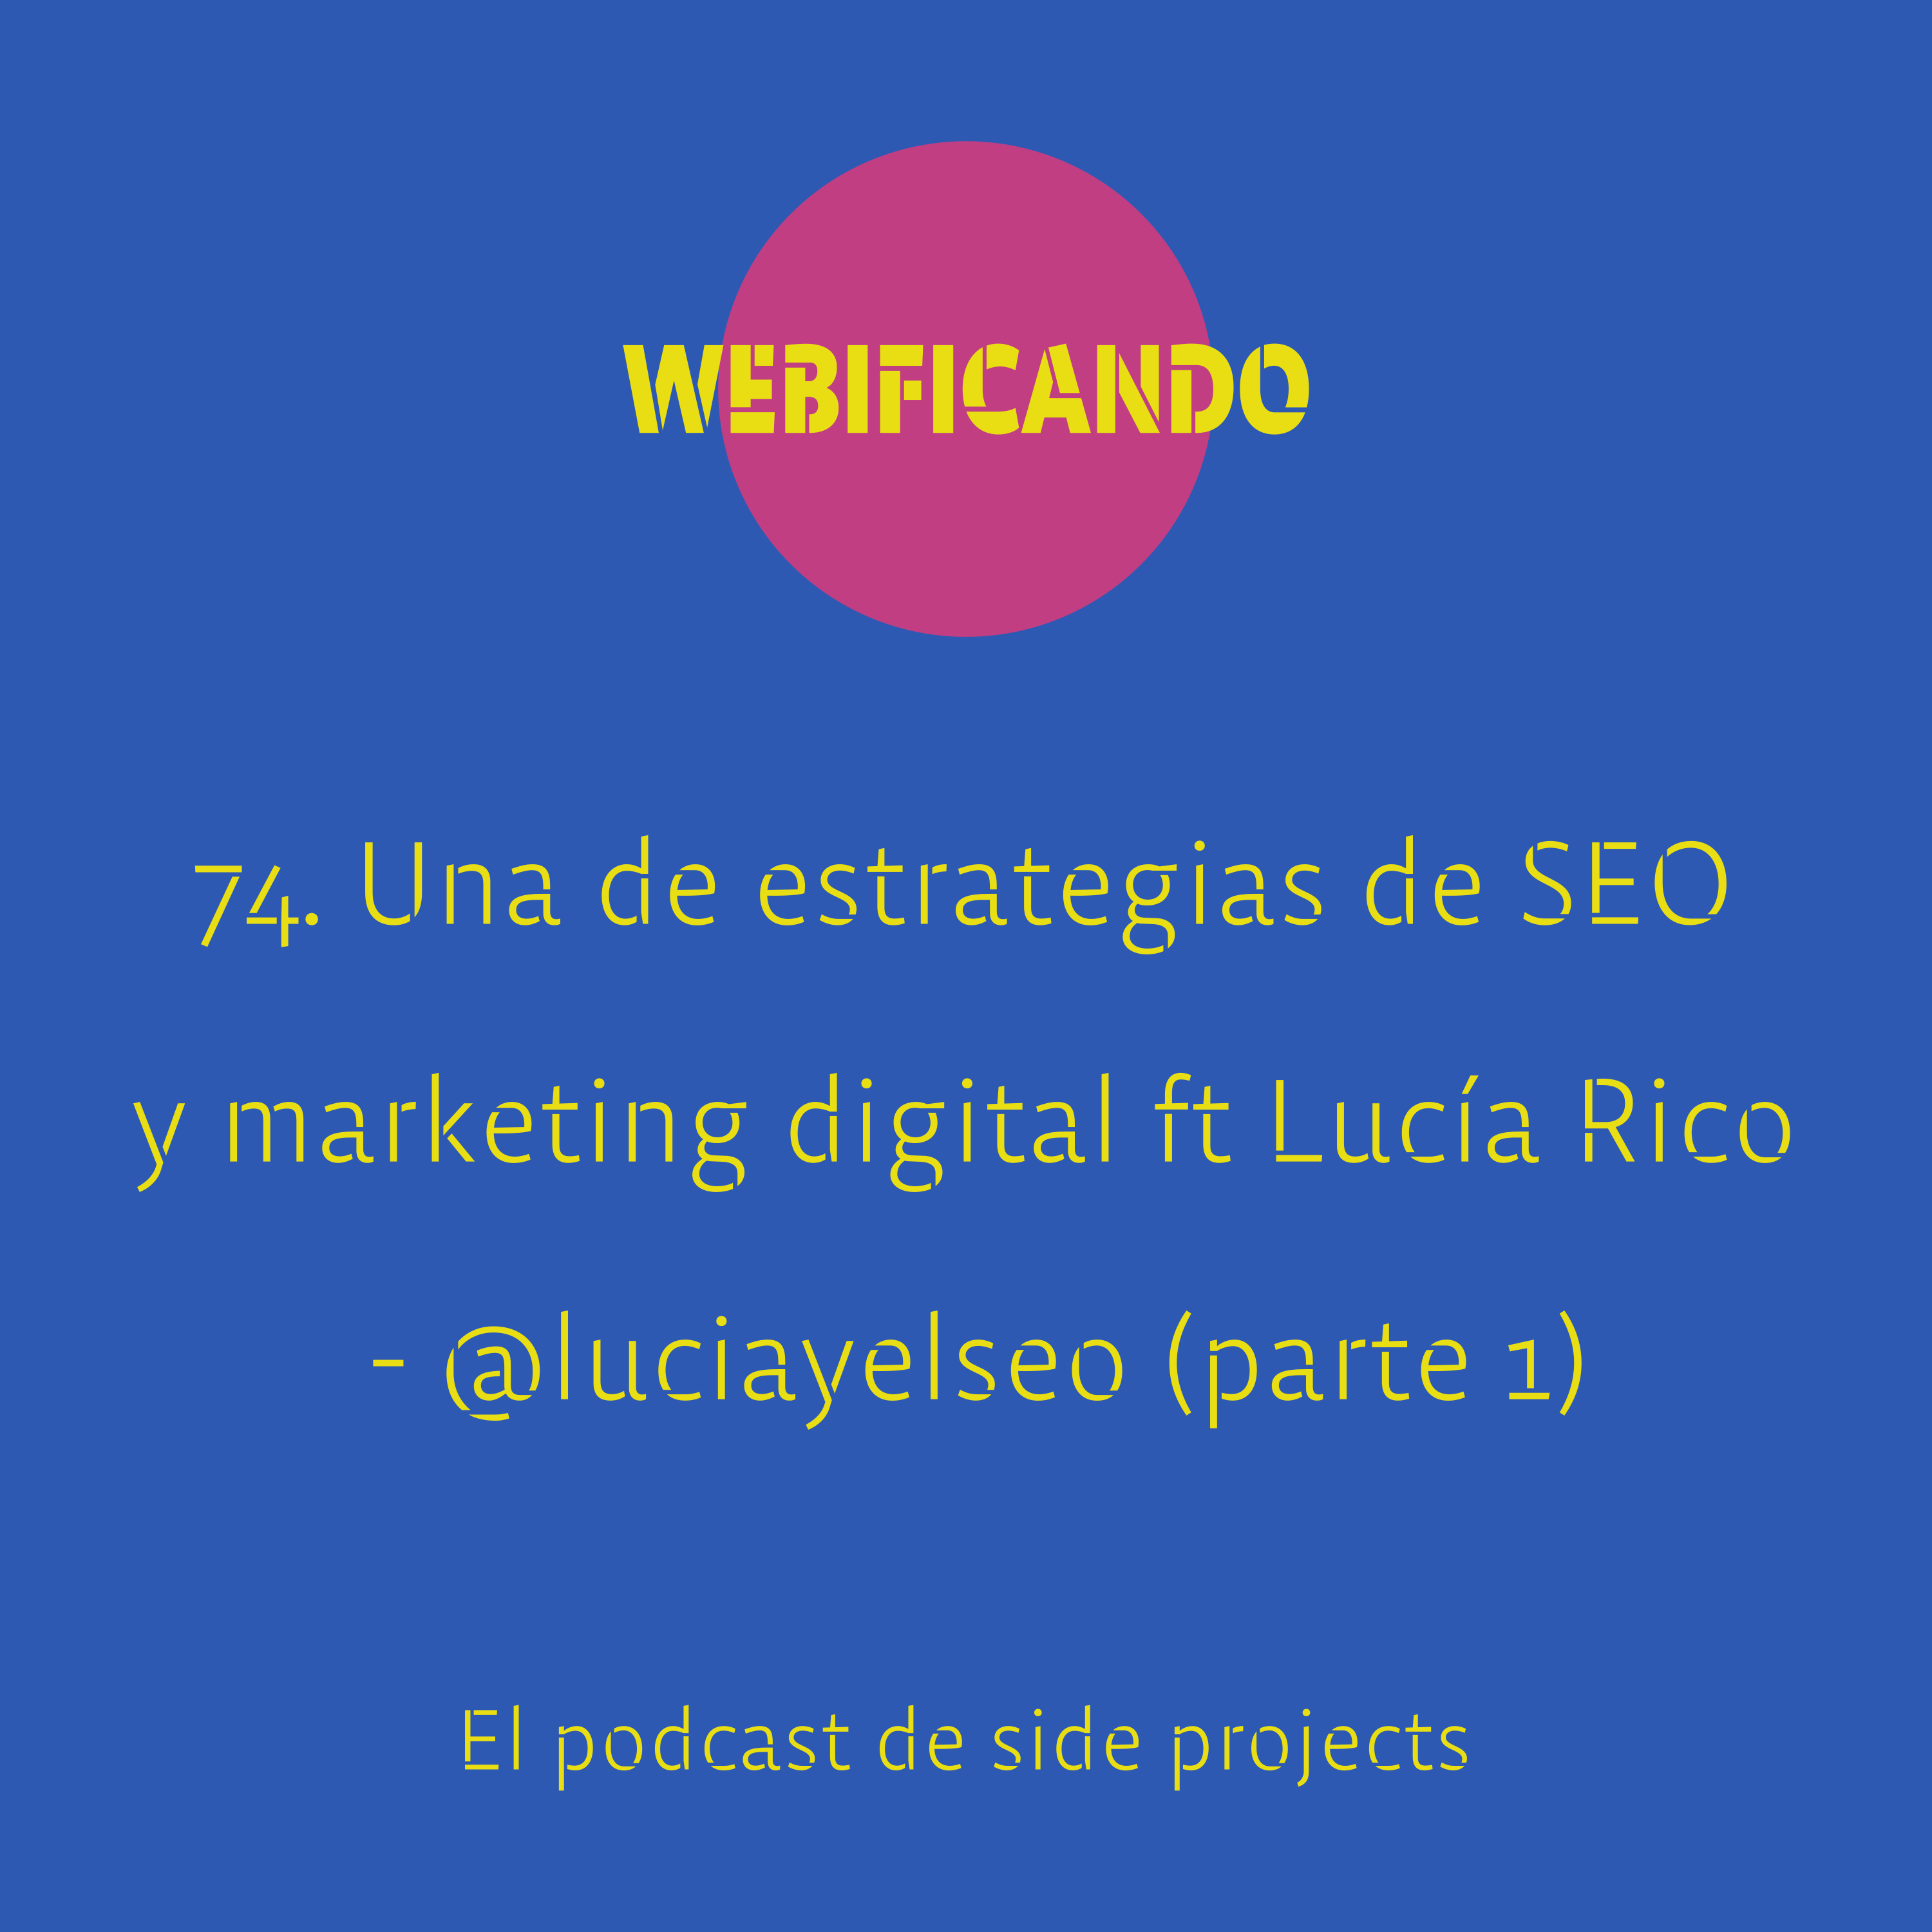 74. Una de estrategias de SEO y marketing digital con Lucía Rico – @luciayelseo  (parte 1)